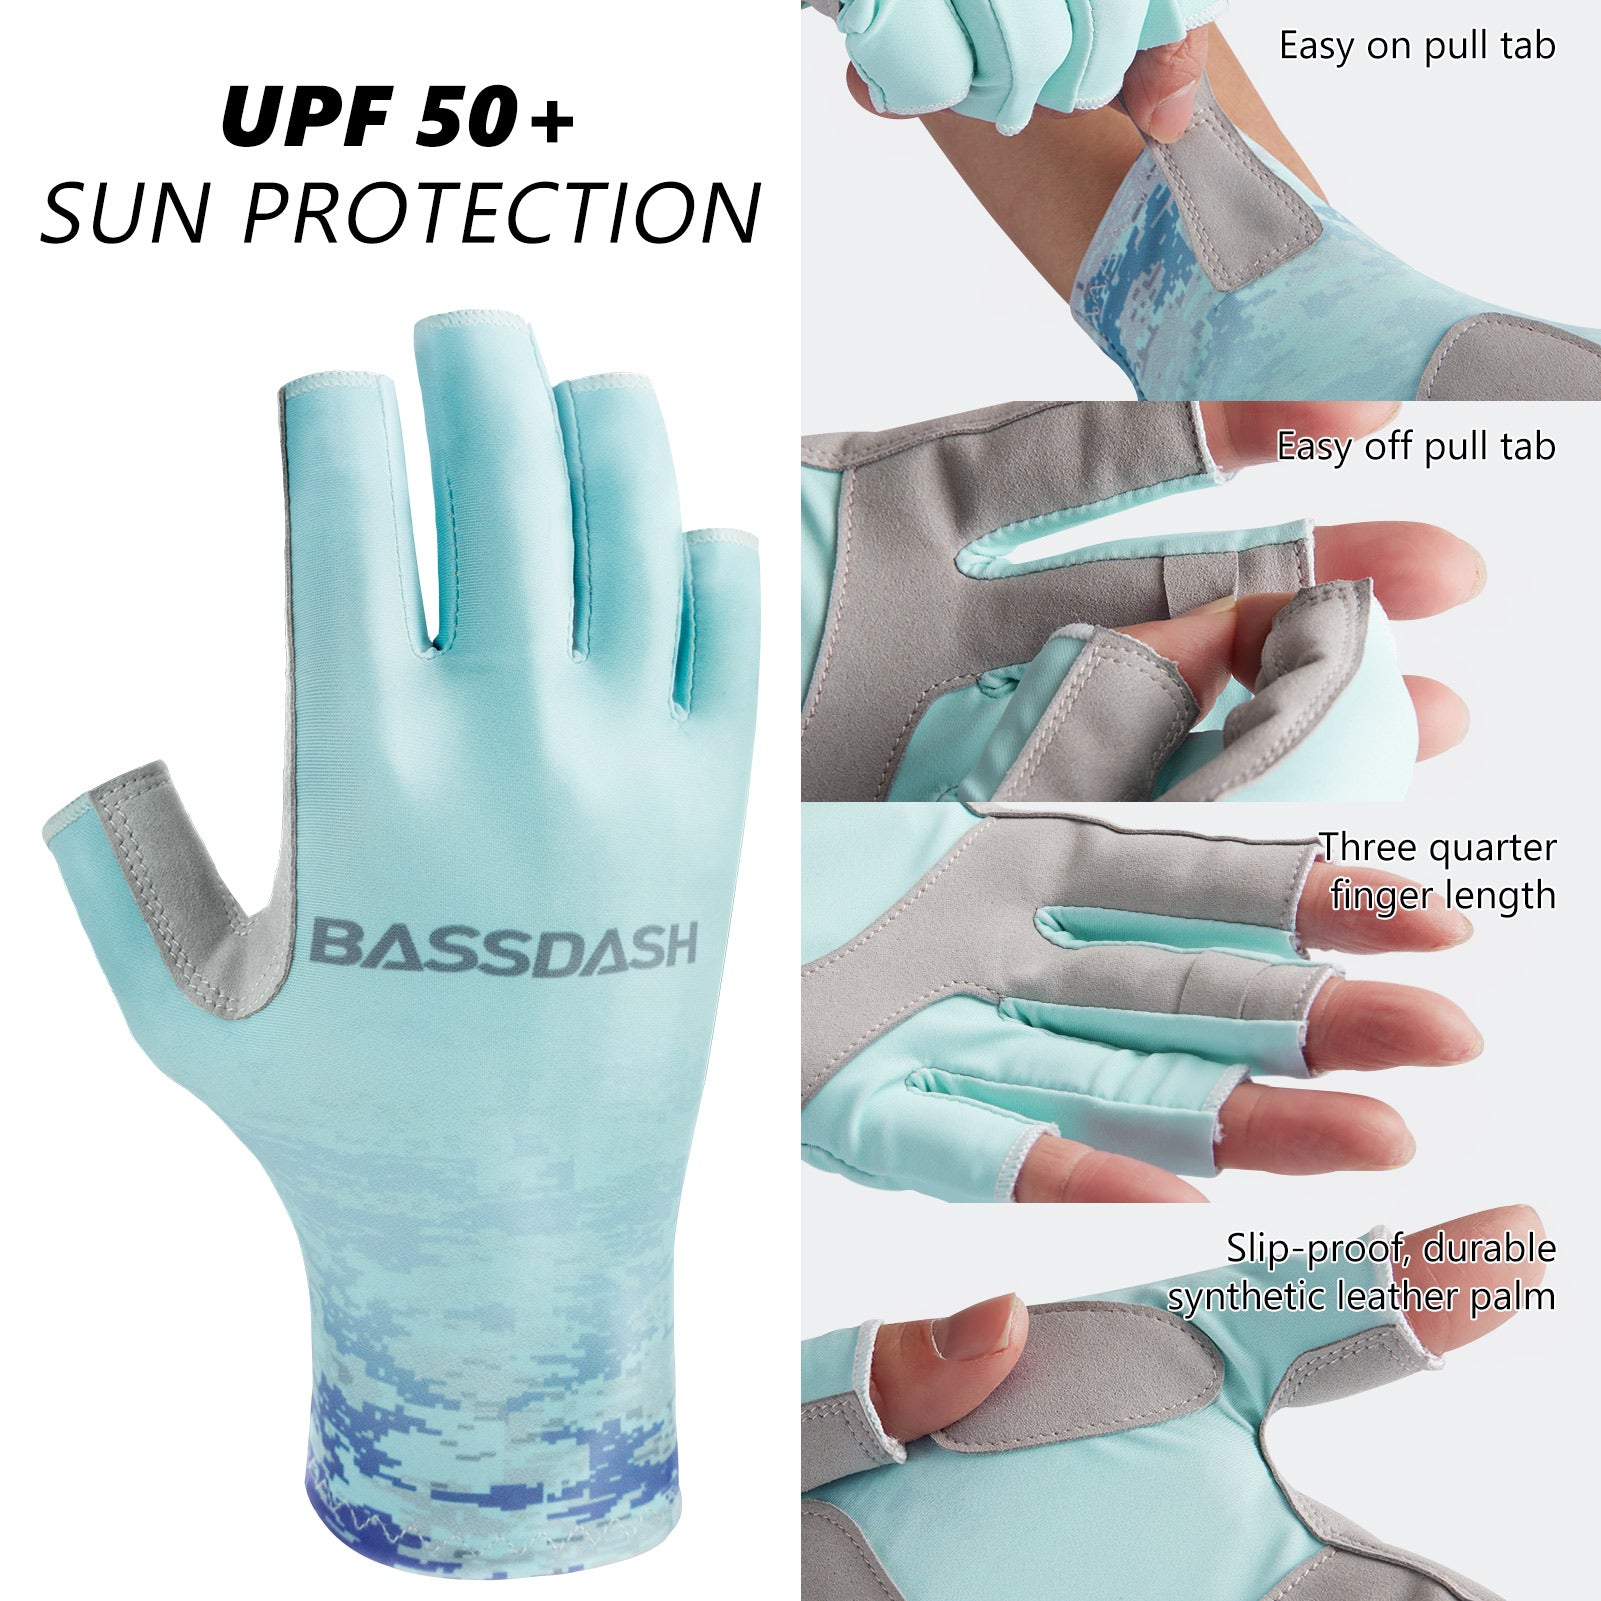 CHSMONB Fishing Gloves UPF50+ Sun Gloves, UV Protection Fingerless Gloves Men Women for Fishing, Kayaking, Rowing, Paddling, Canoeing, Hunting